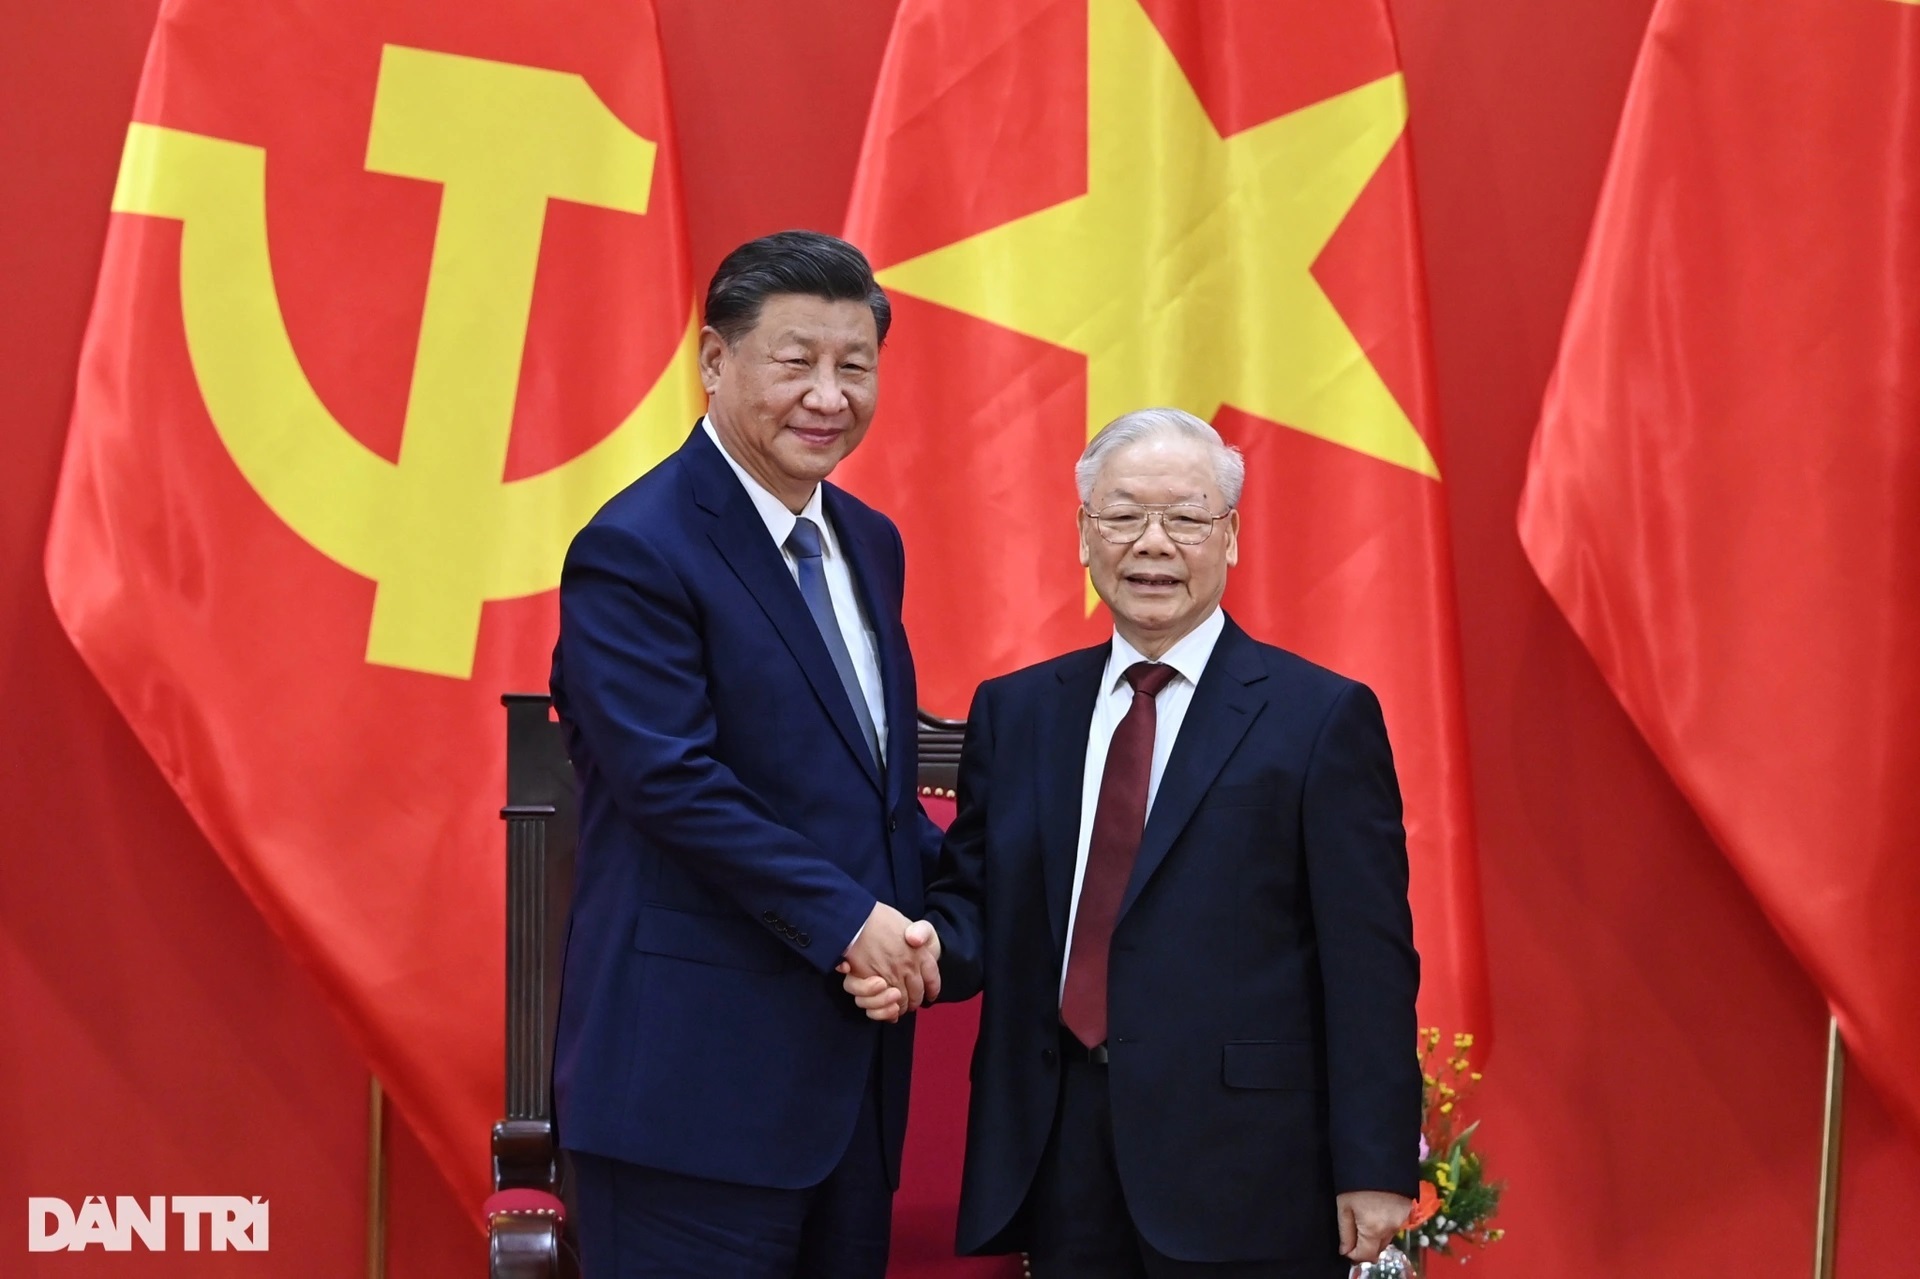 Chủ tịch Tập Cận Bình thăm Việt Nam: Dấu mốc lịch sử mới - 14